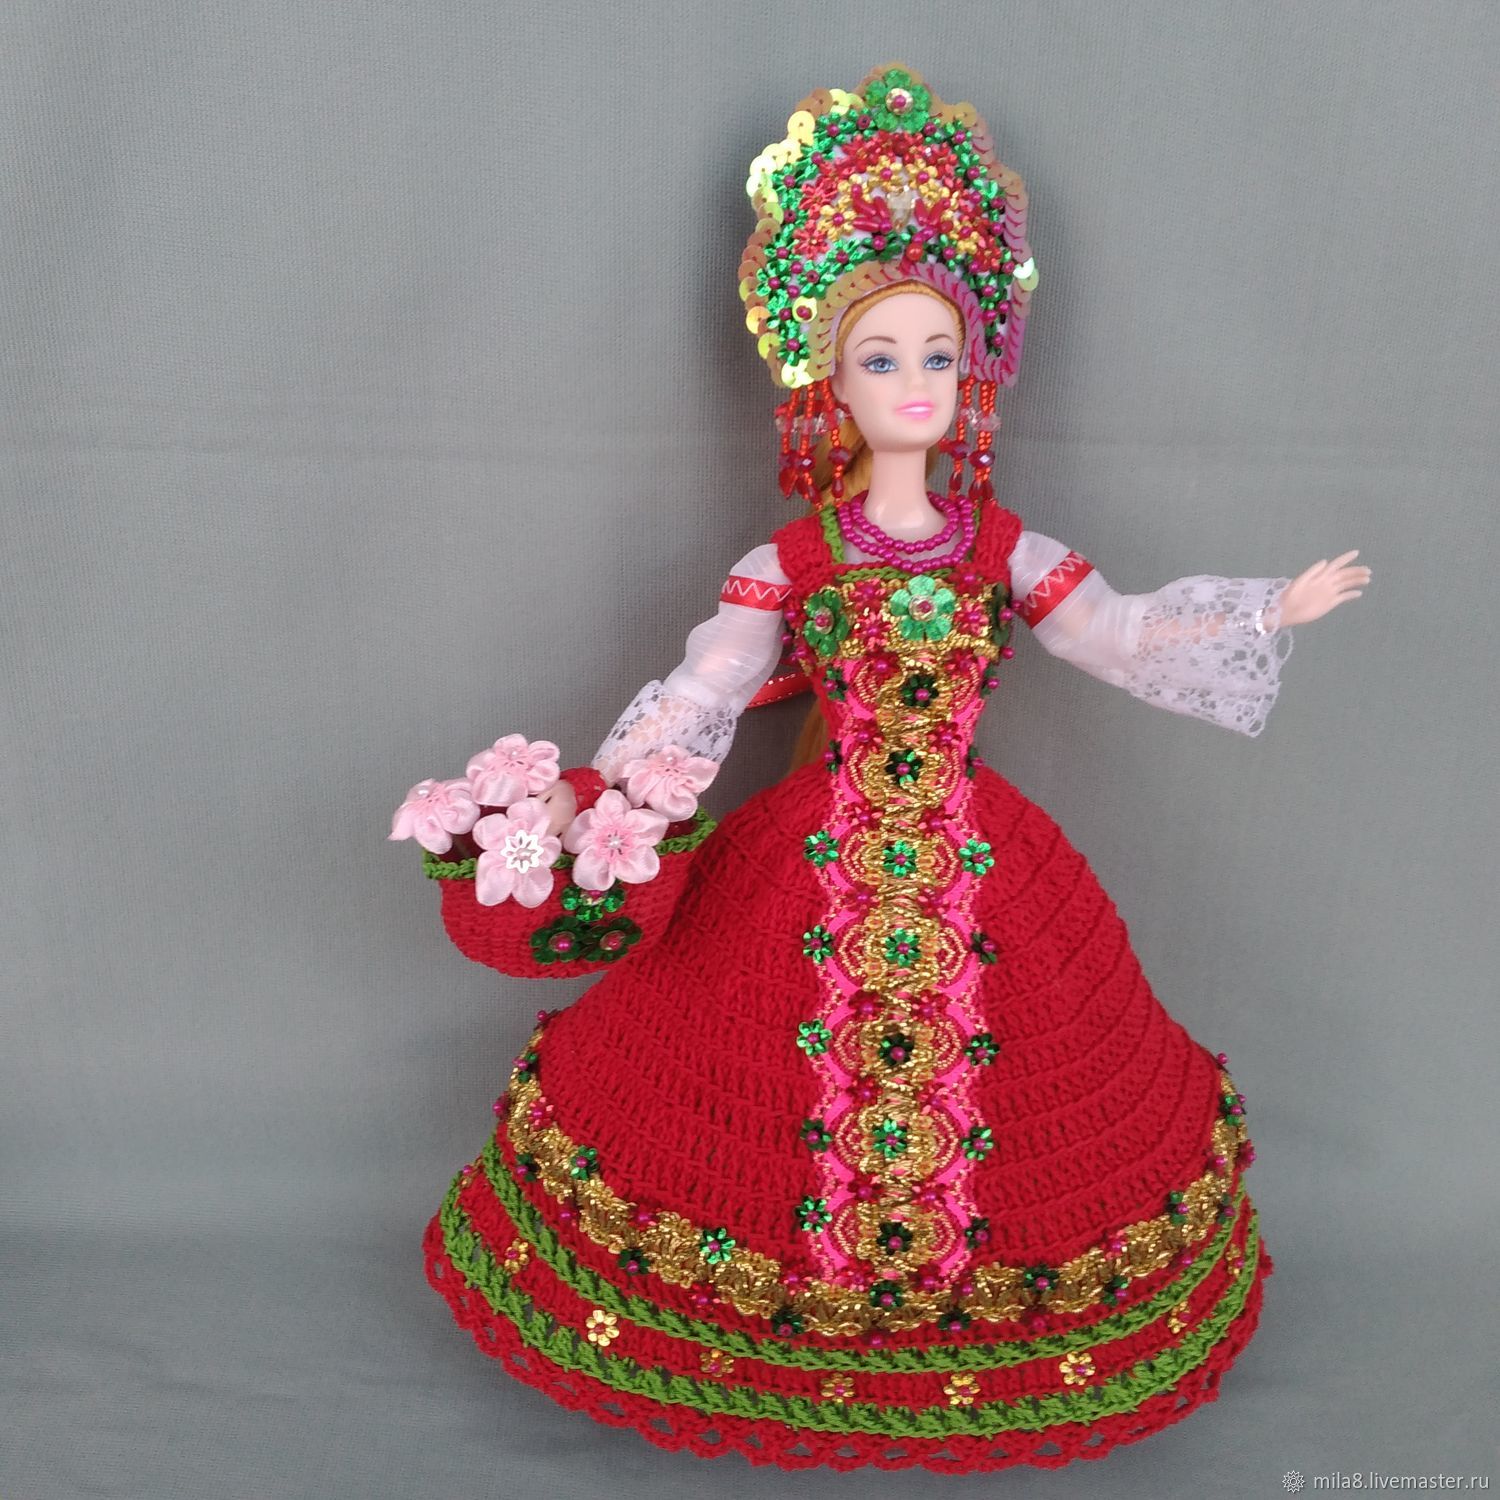 Русский народный костюм» (или наряд для куклы) | Lyudmila2807 - Дневник Lyudmila2807